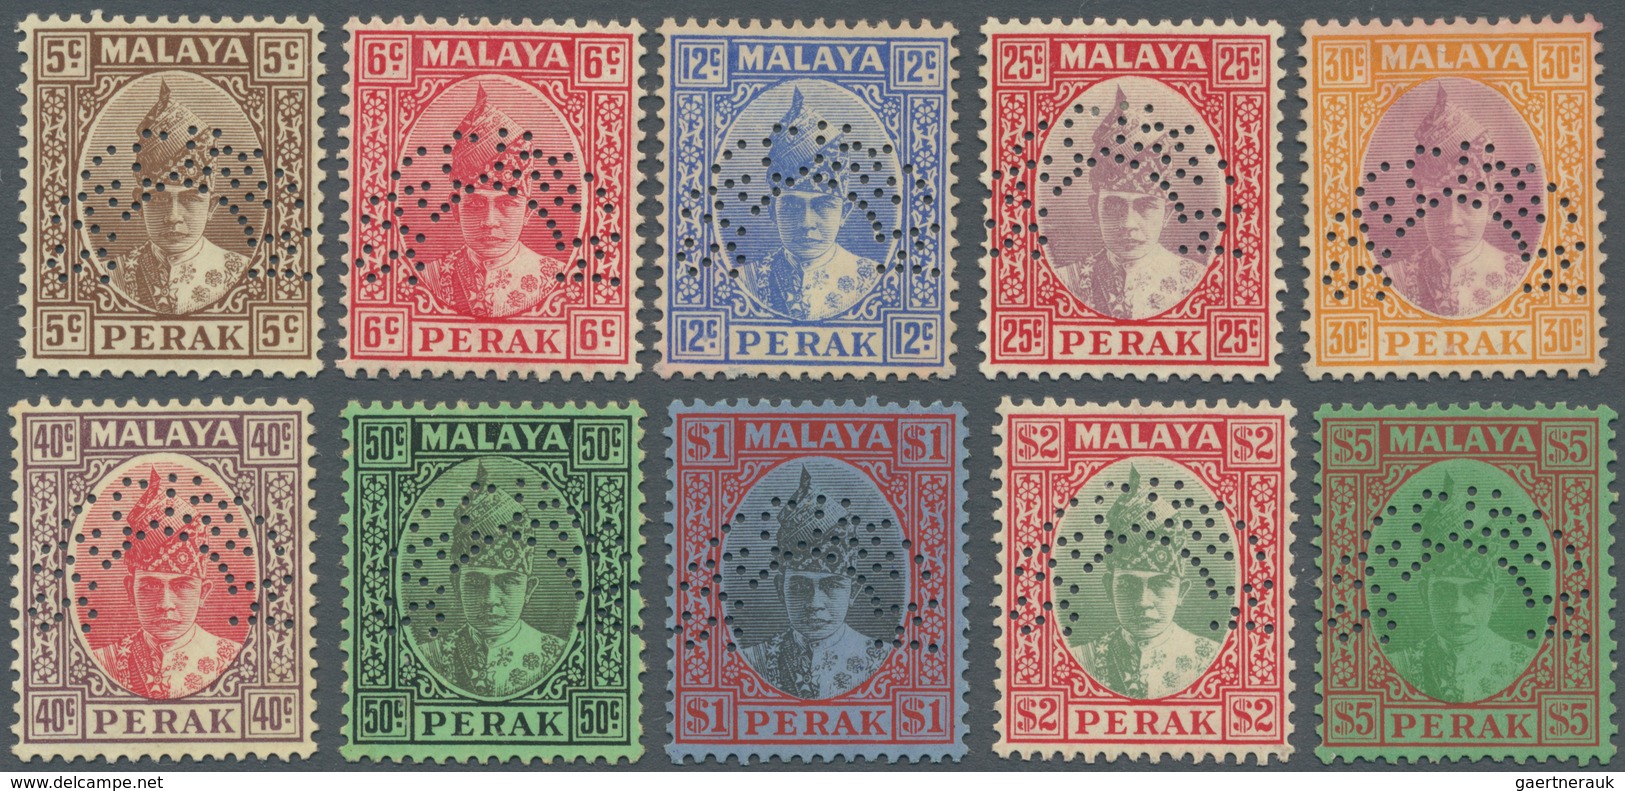 Malaiische Staaten - Perak: 1938/1941, Sultan Iskander definitives ten different values perf. SPECIM